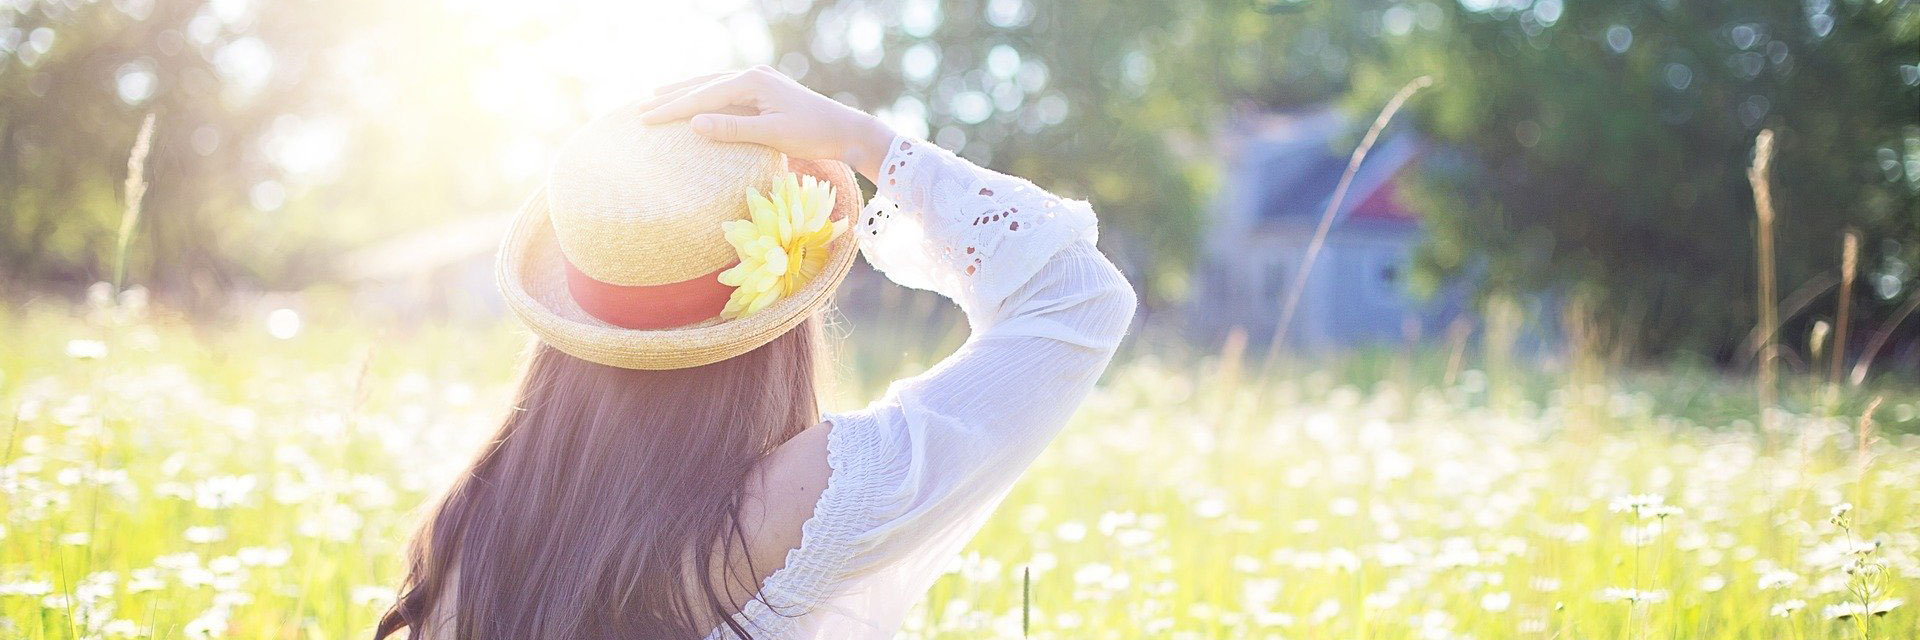 Woman wearing hat in sun